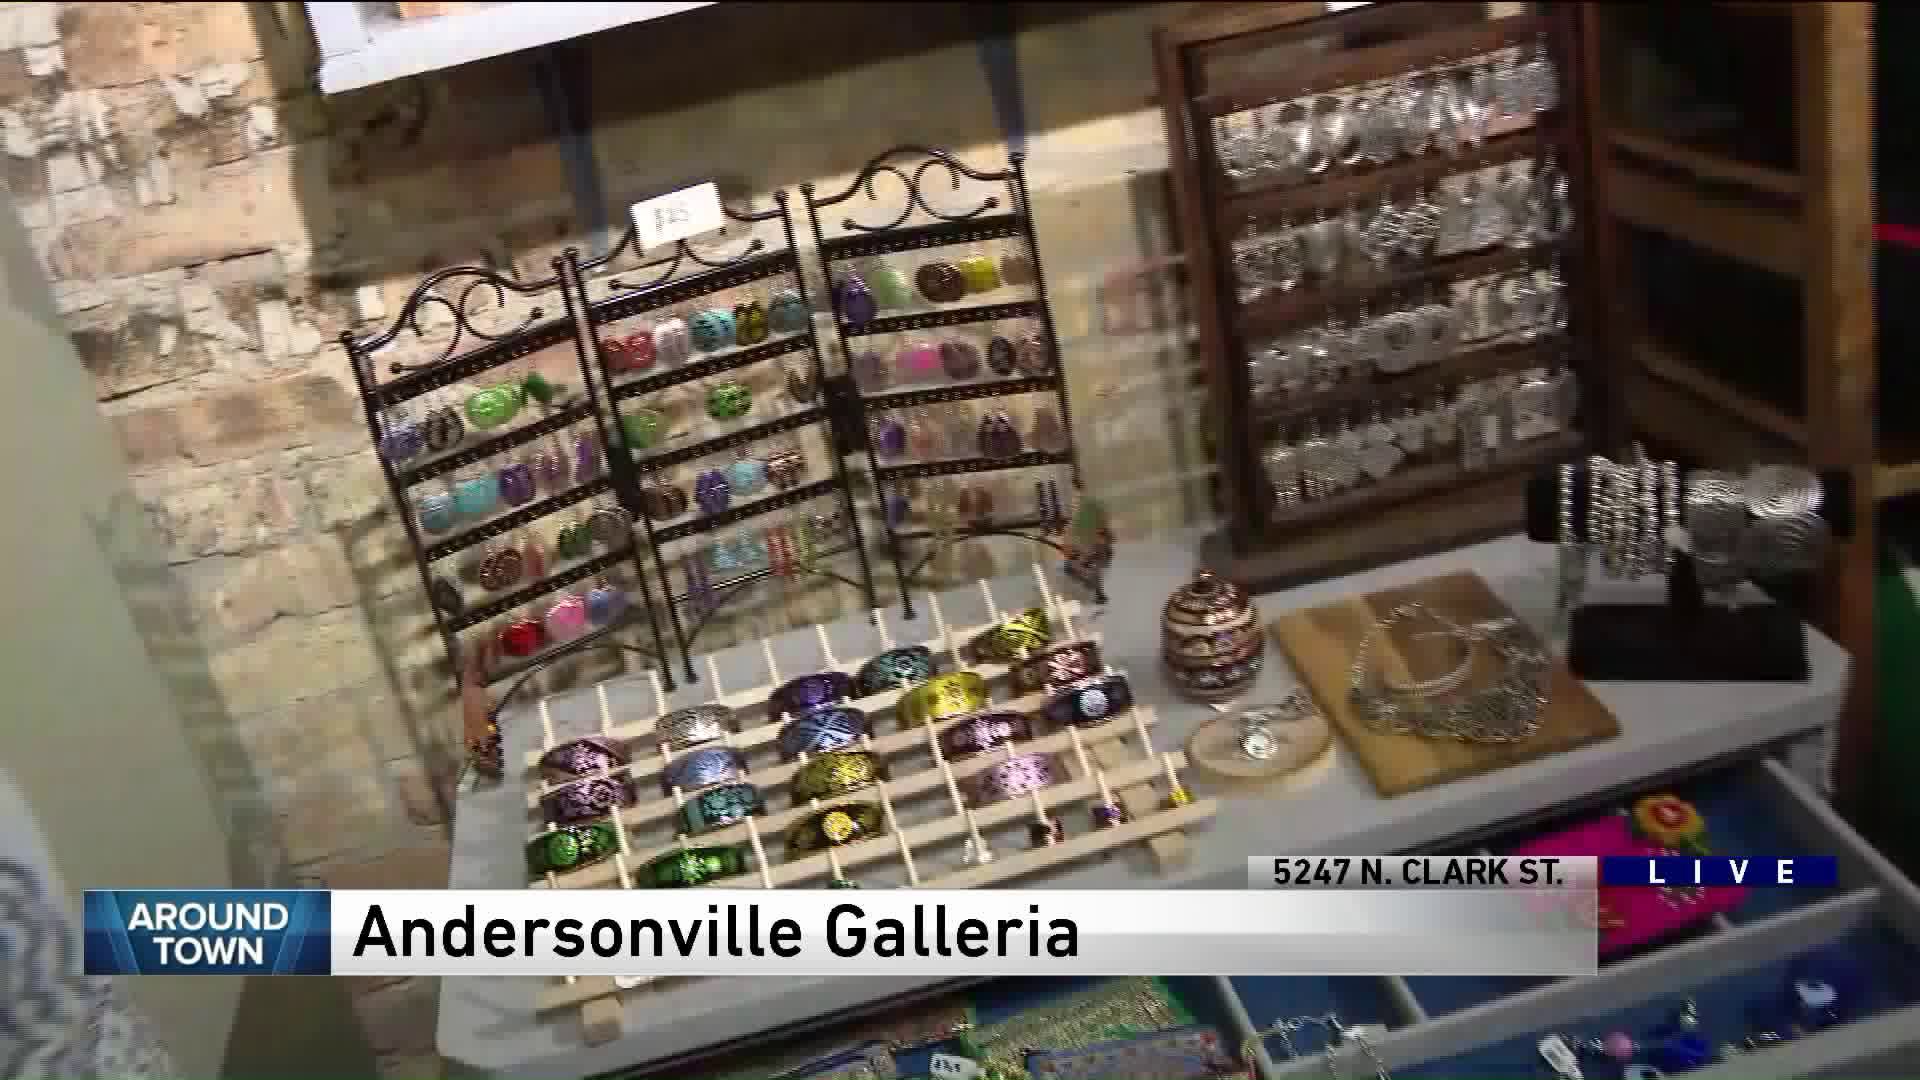 Around Town explores Andersonville Galleria